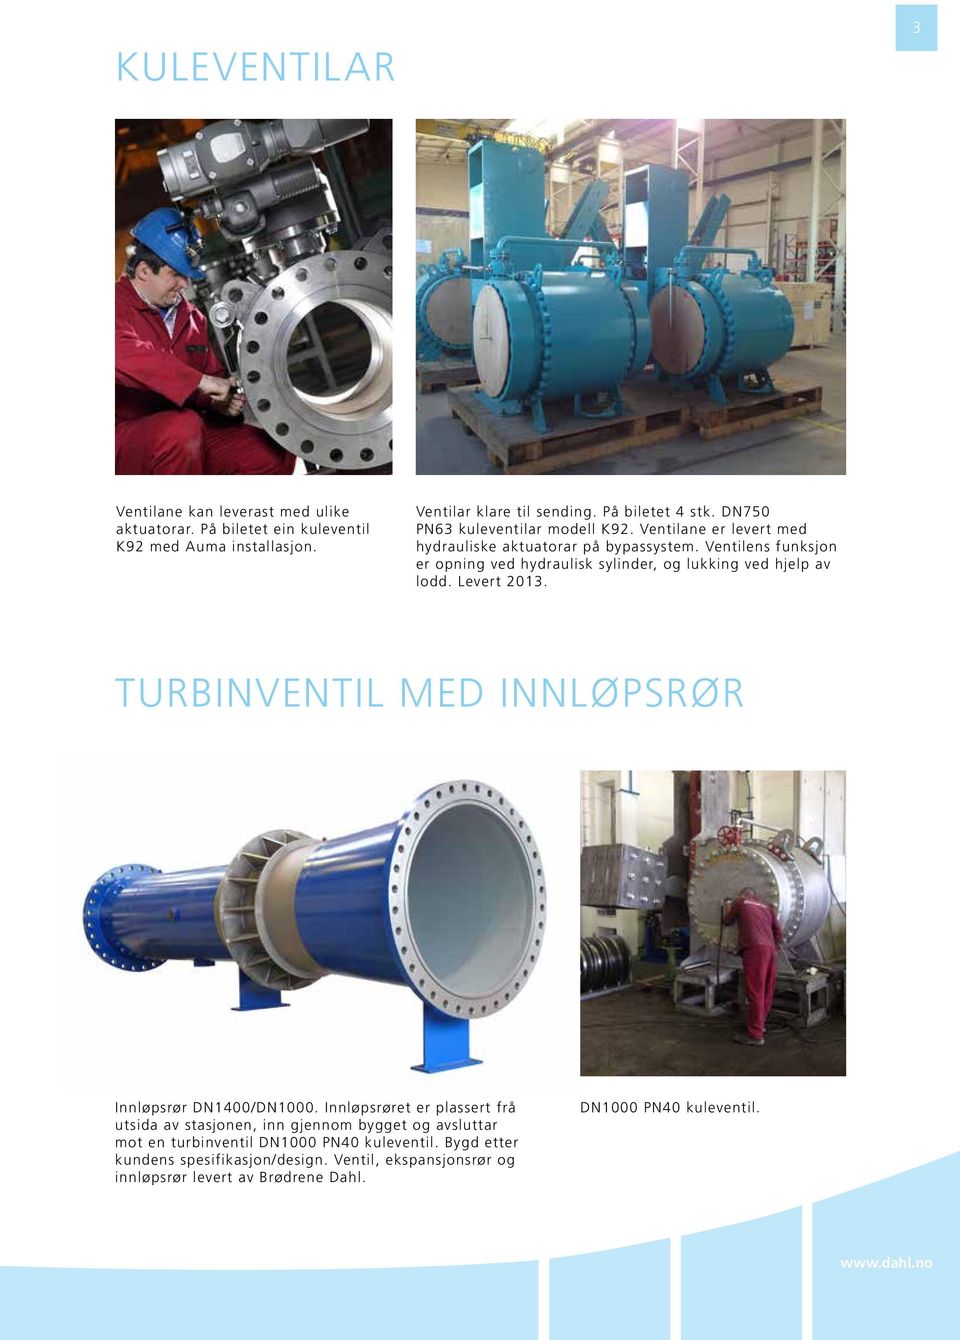 Ventilens funksjon er opning ved hydraulisk sylinder, og lukking ved hjelp av lodd. Levert 2013. TURBINVENTIL MED INNLØPSRØR Innløpsrør DN1400/DN1000.